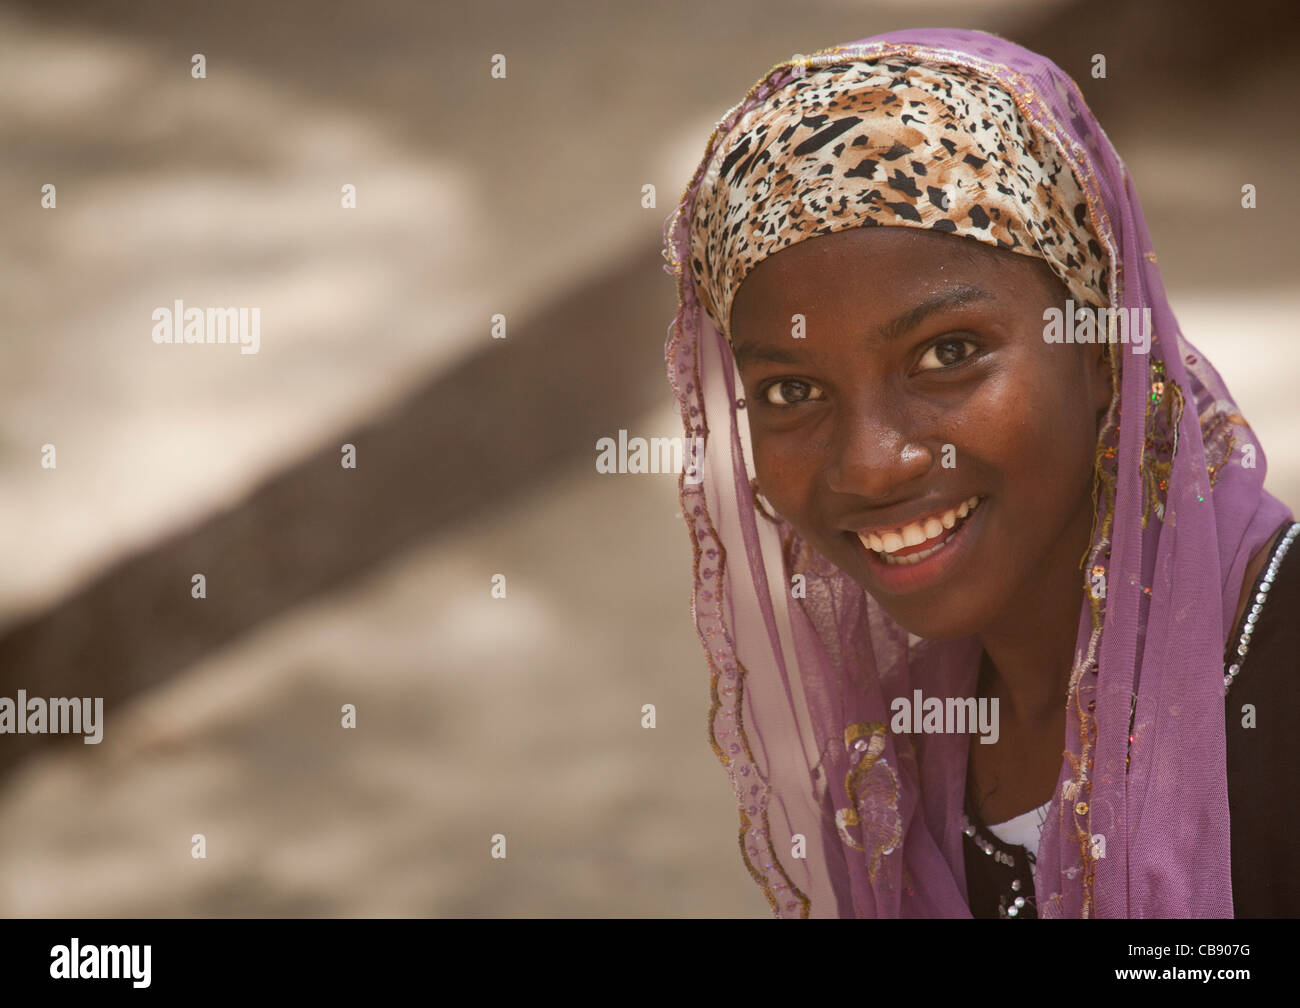 Teenage ragazza carina a Nizza la postura con velo sorridente alla fotocamera, Lamu, Kenya Foto Stock